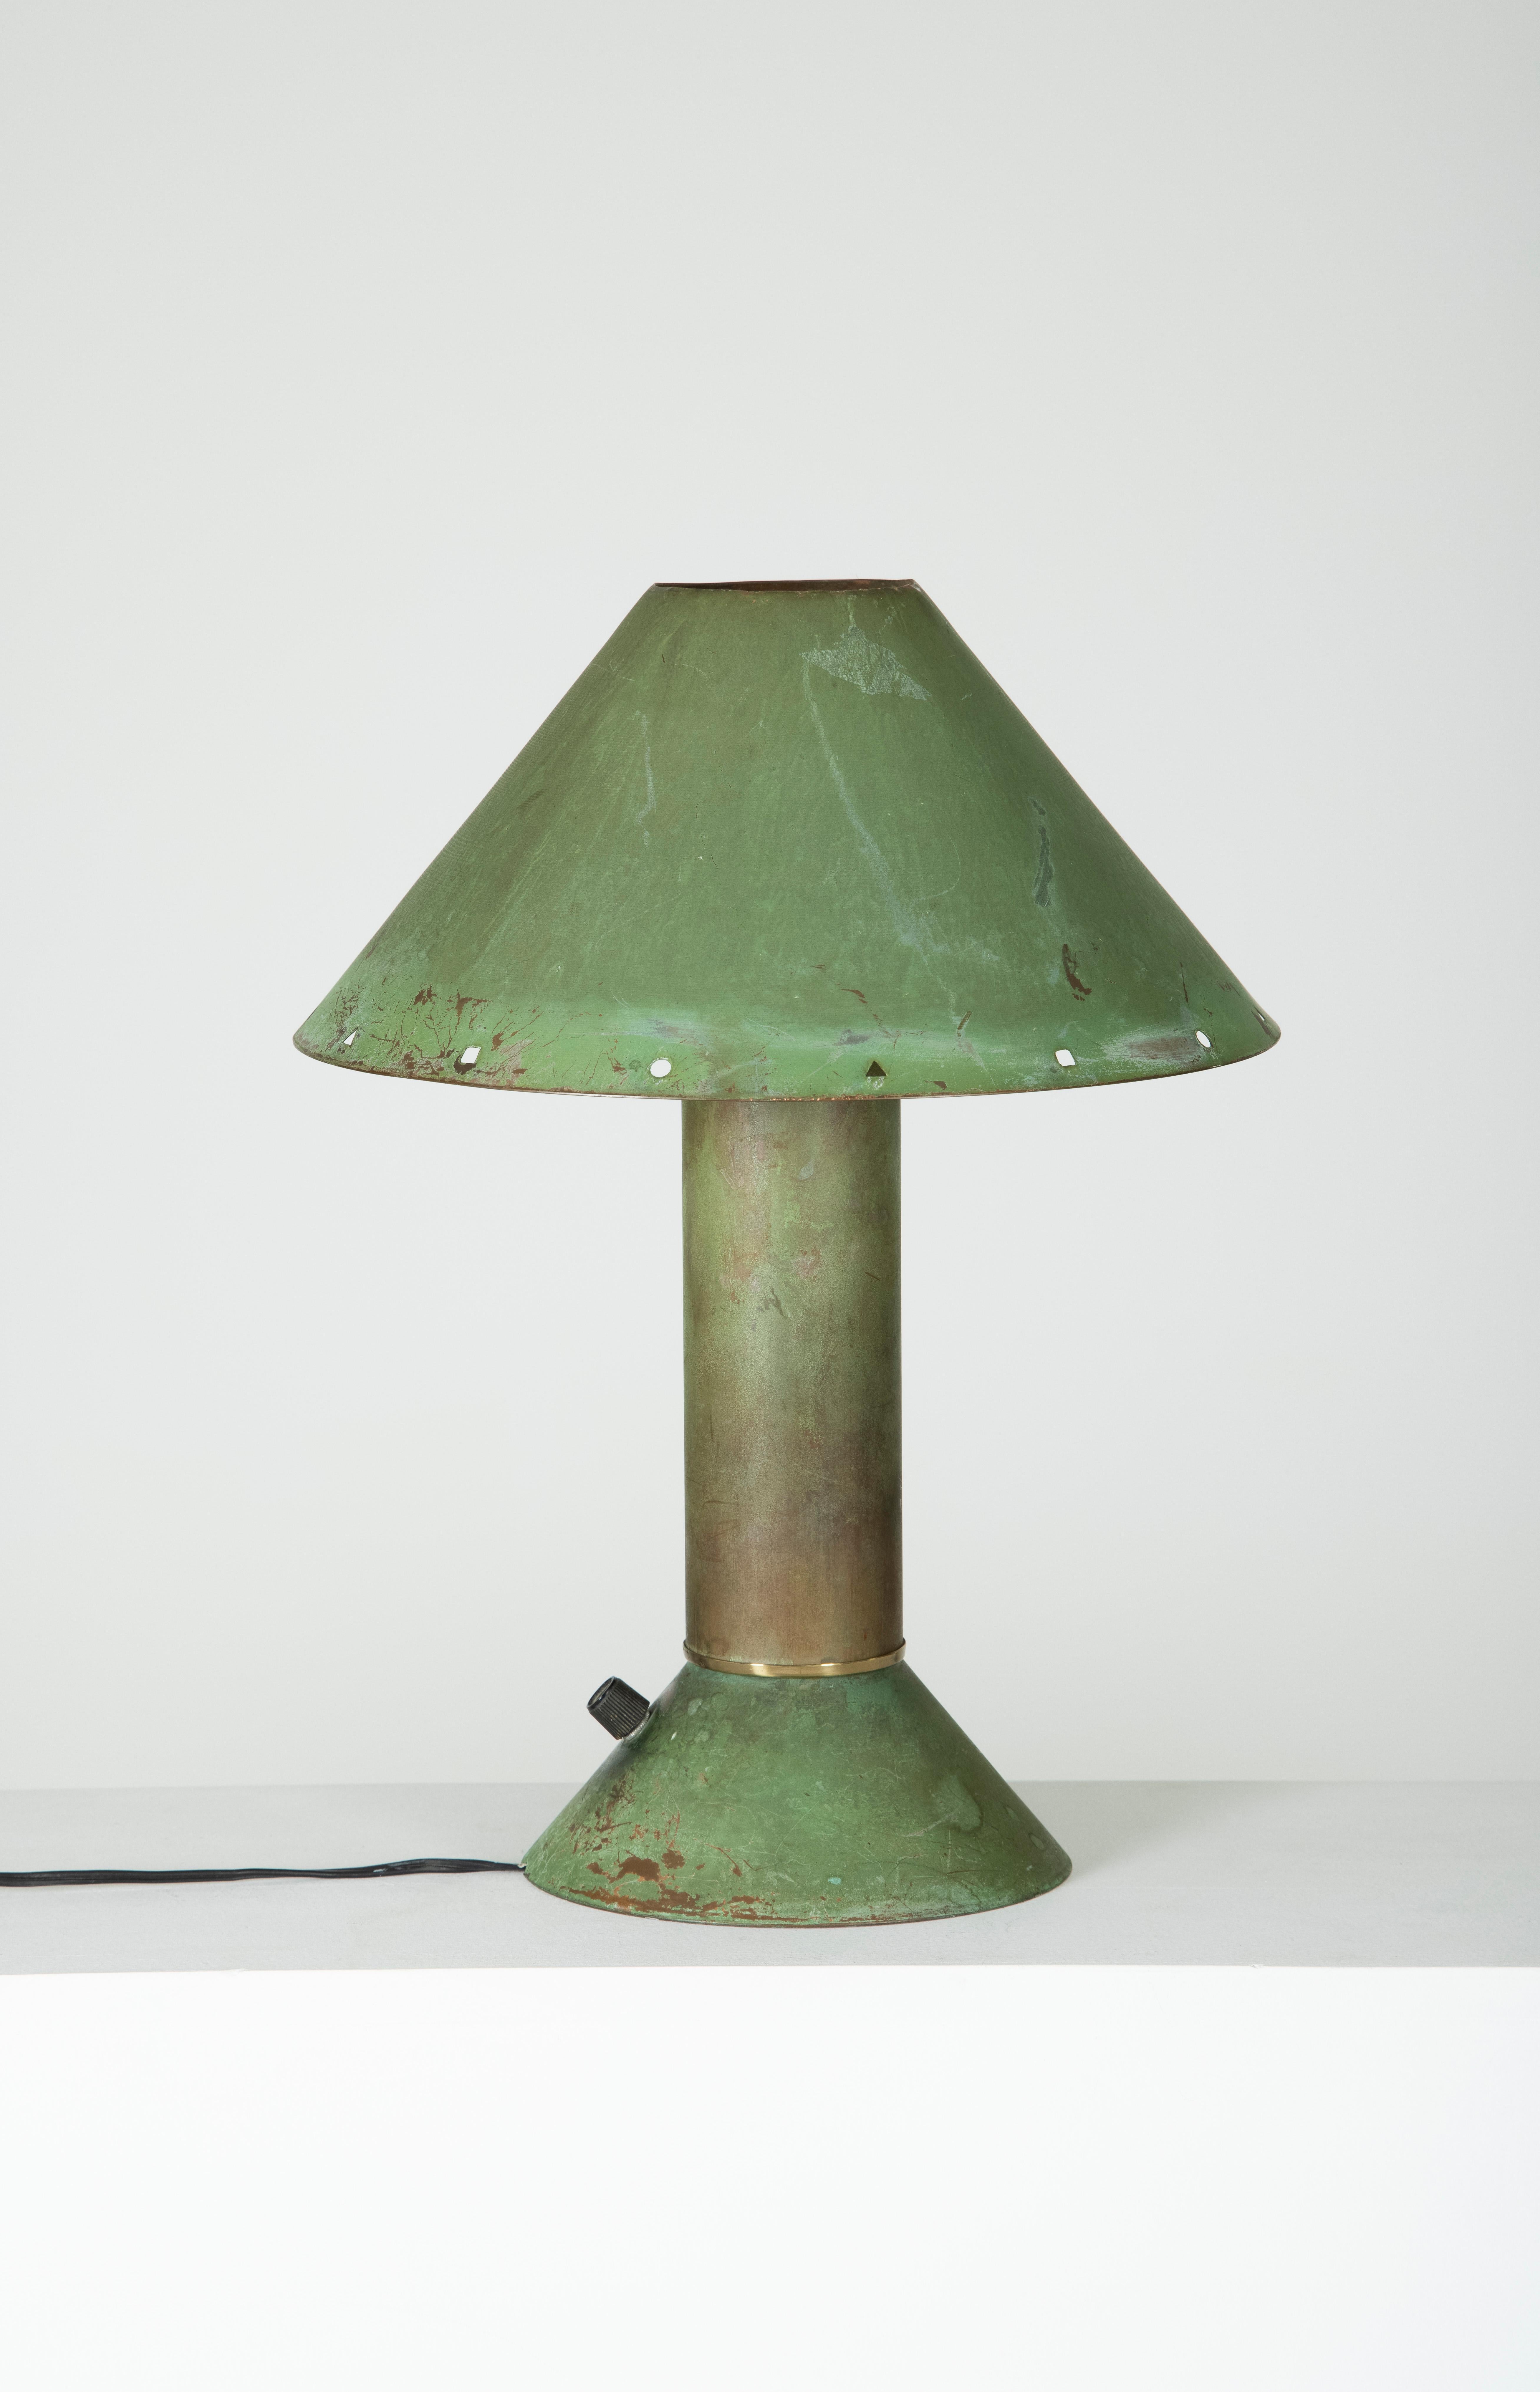 Lampe de table en cuivre de Ron Rezek, des années 1990. Généralement en acier galvanisé, celui-ci est une version unique en cuivre.
LP852